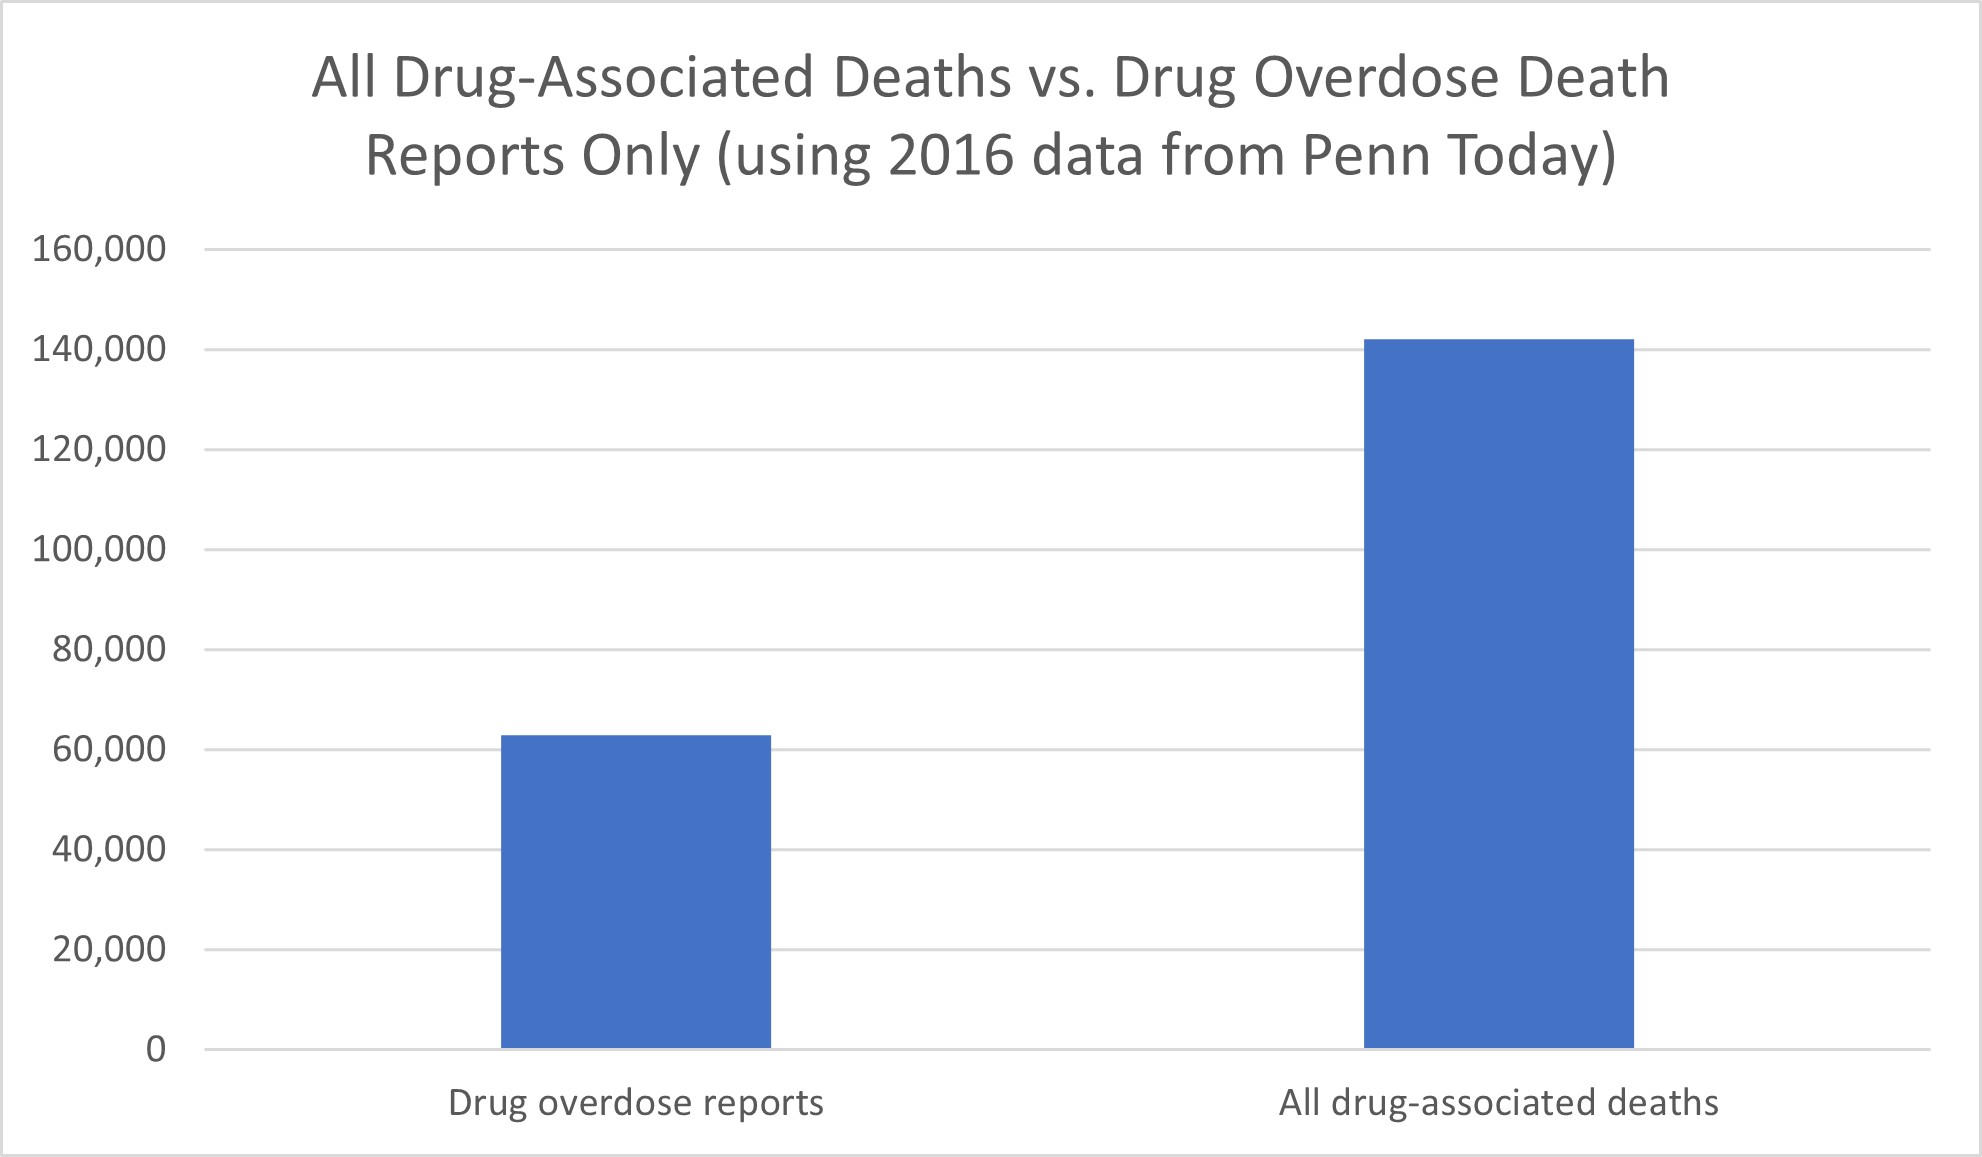 Drug overdose deaths vs. all drug-related deaths, per researcher's estimations